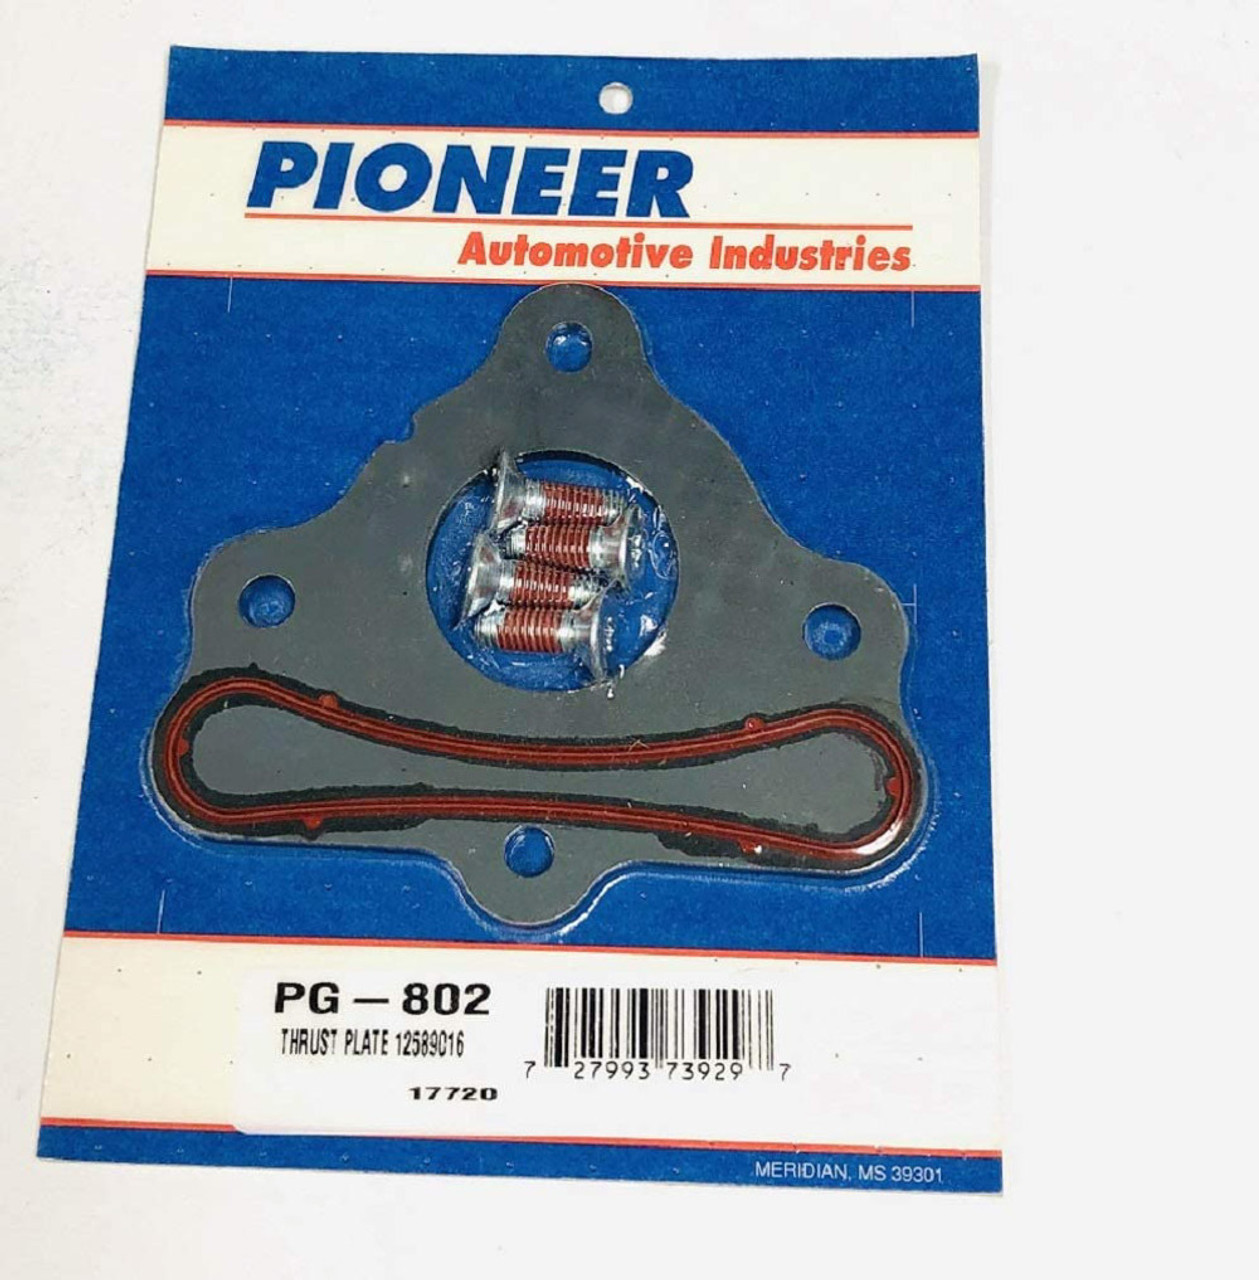 Pioneer Camshaft Thrust Plate GM LS Engines - PIOPG-802